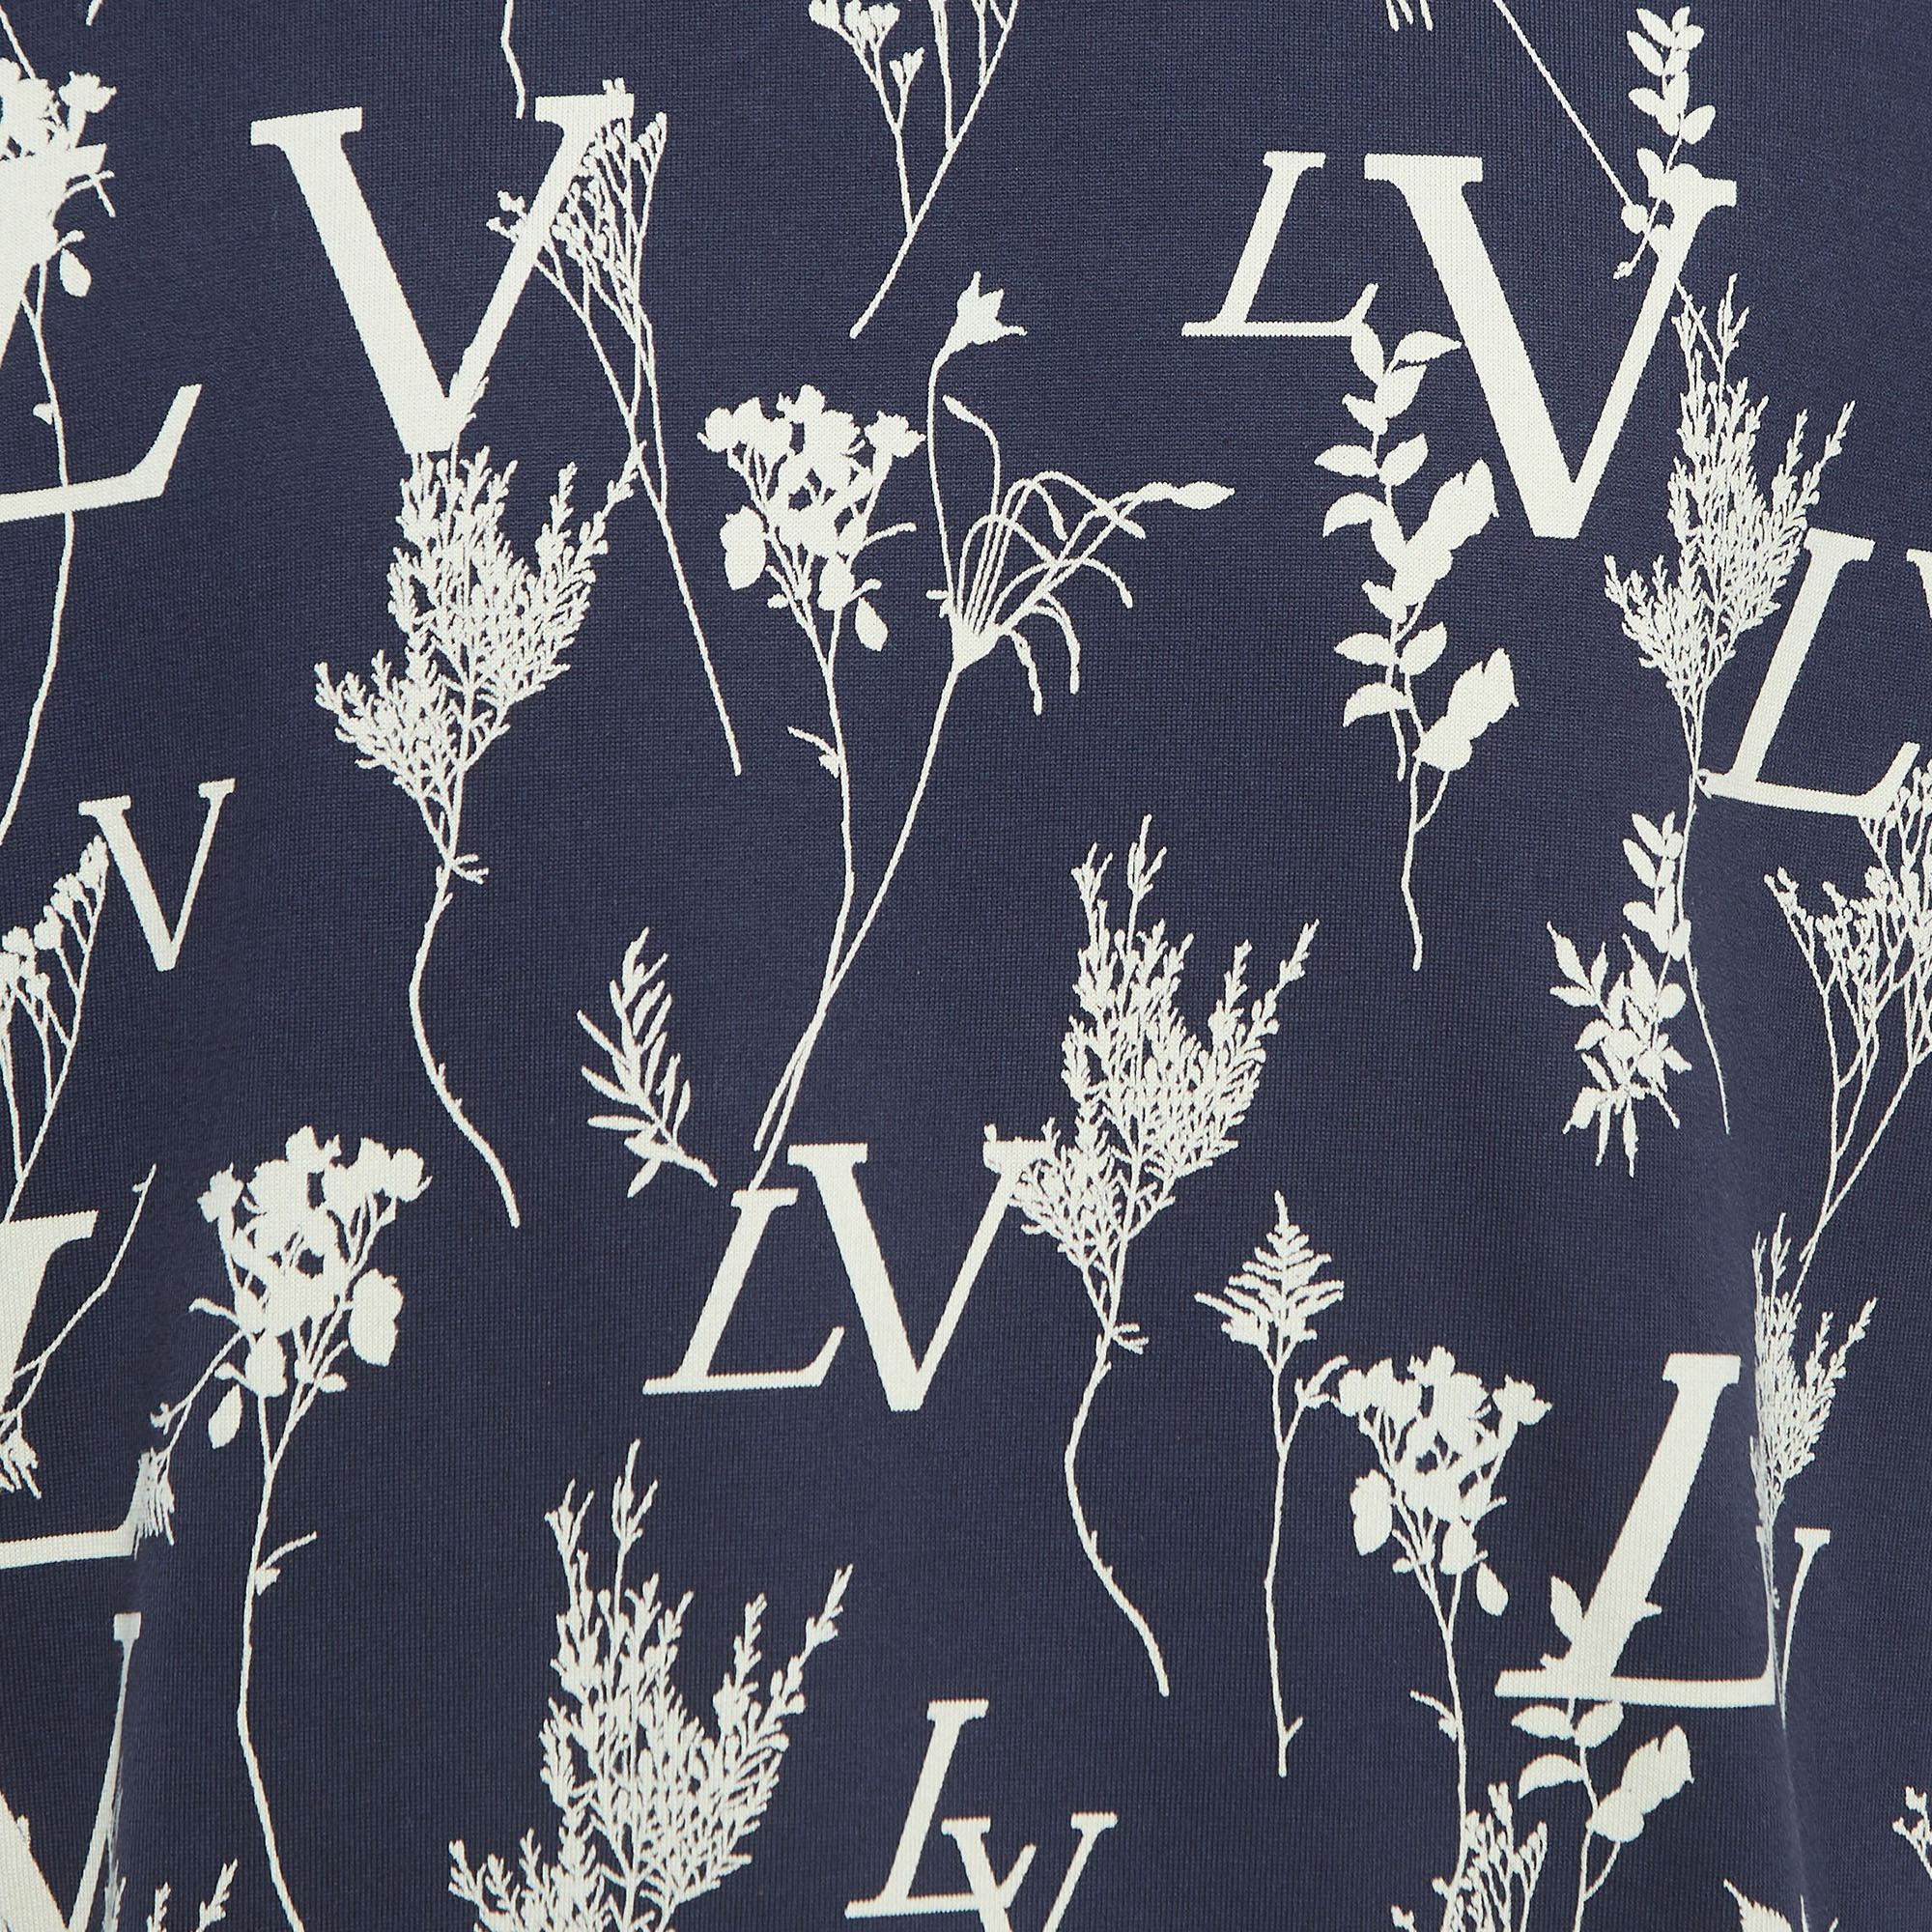 Louis Vuitton Navy Blue Leaf Discharge Print Cotton T-Shirt XL